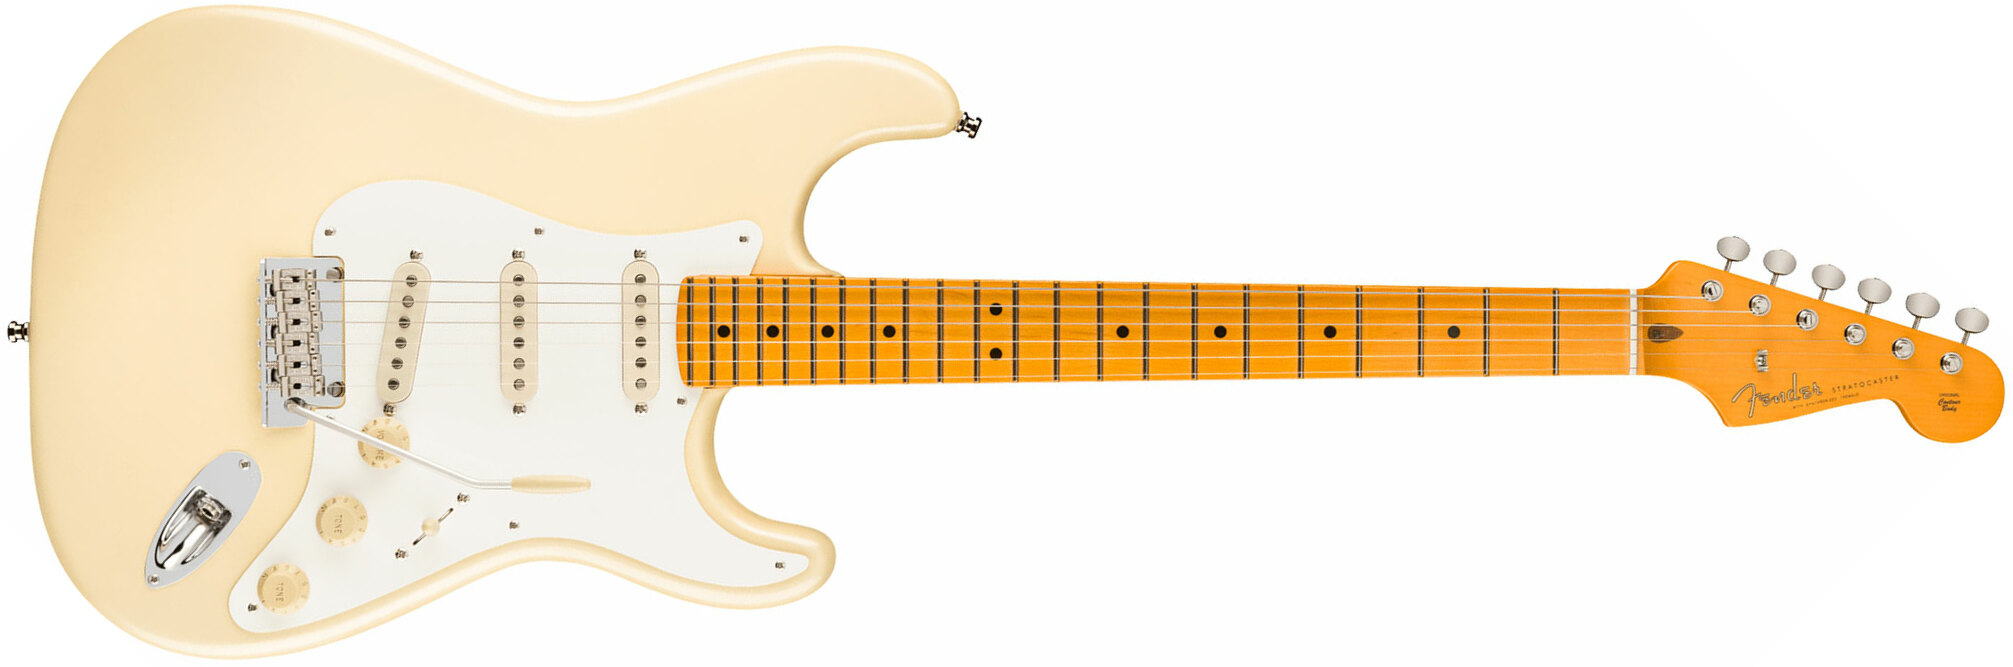 Fender Lincoln Brewster Strat Usa Signature 3s Dimarzio Trem Mn - Olympic Pearl - Retro-Rock-E-Gitarre - Main picture